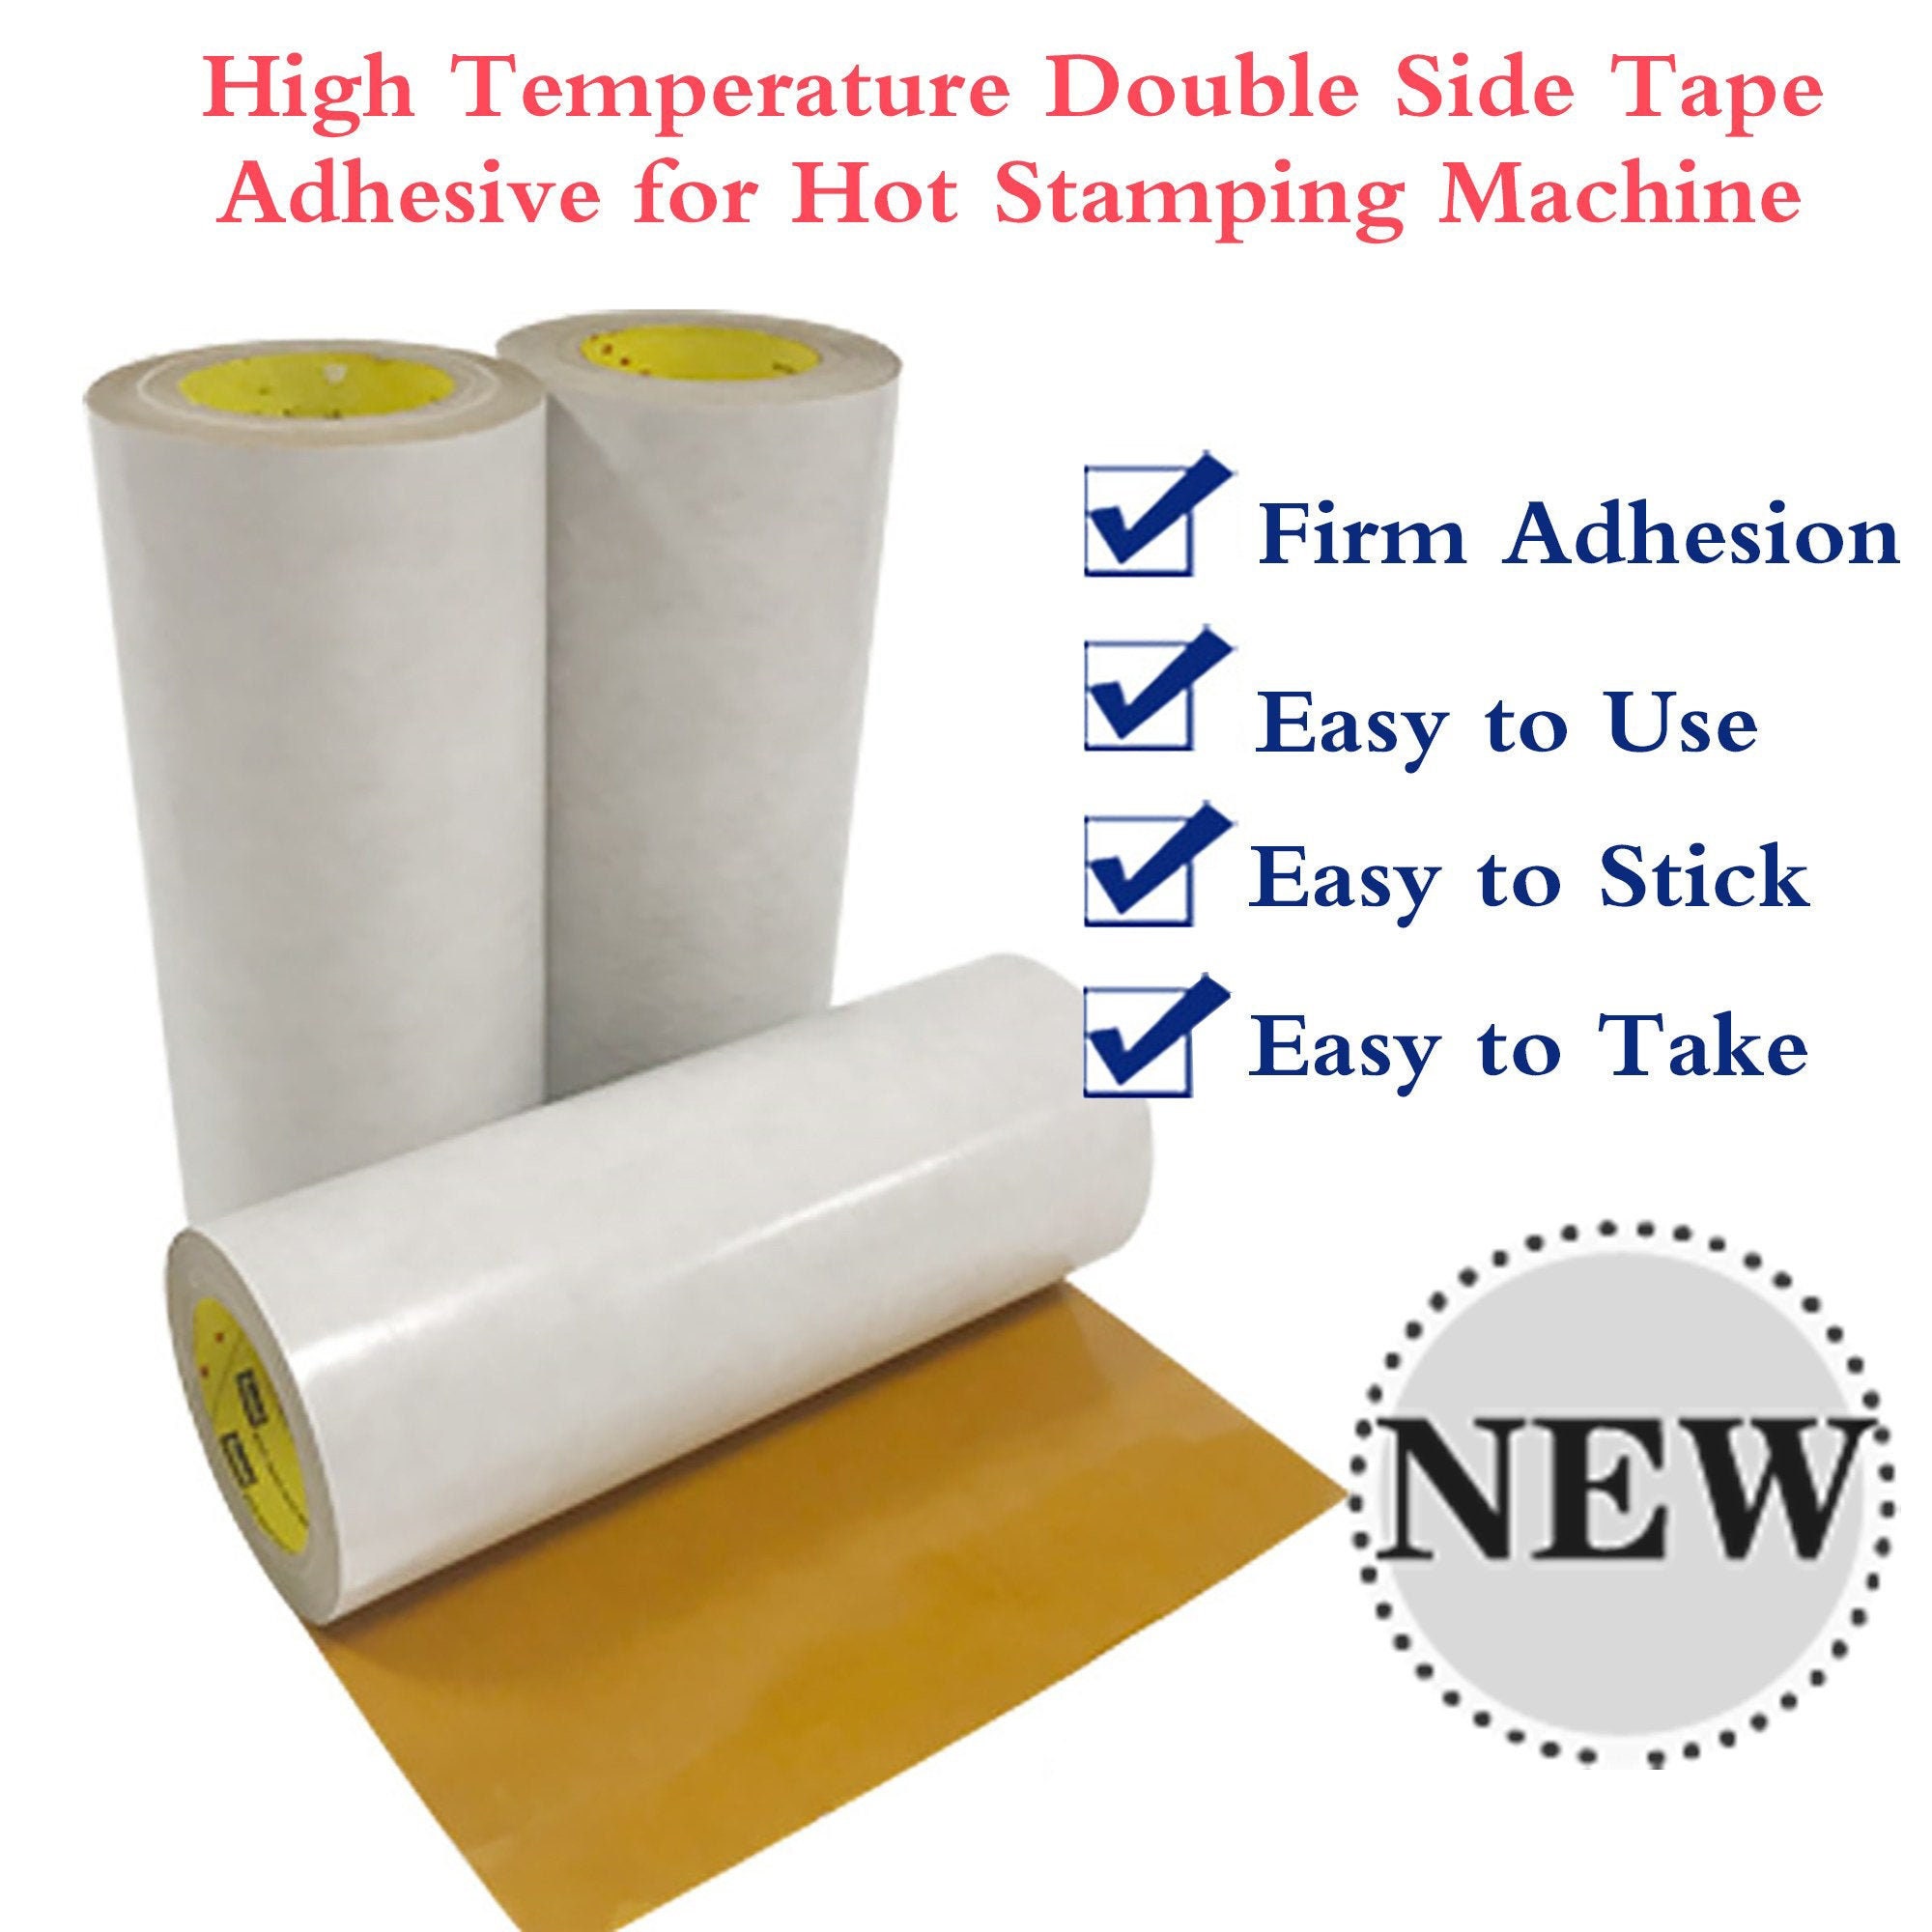 Scor-tape 1/8 Double Sided Adhesive Scor Tape Acid Free Double Sided Tape  Double Sided Scor Tape Paper Backed Tape 18-005 